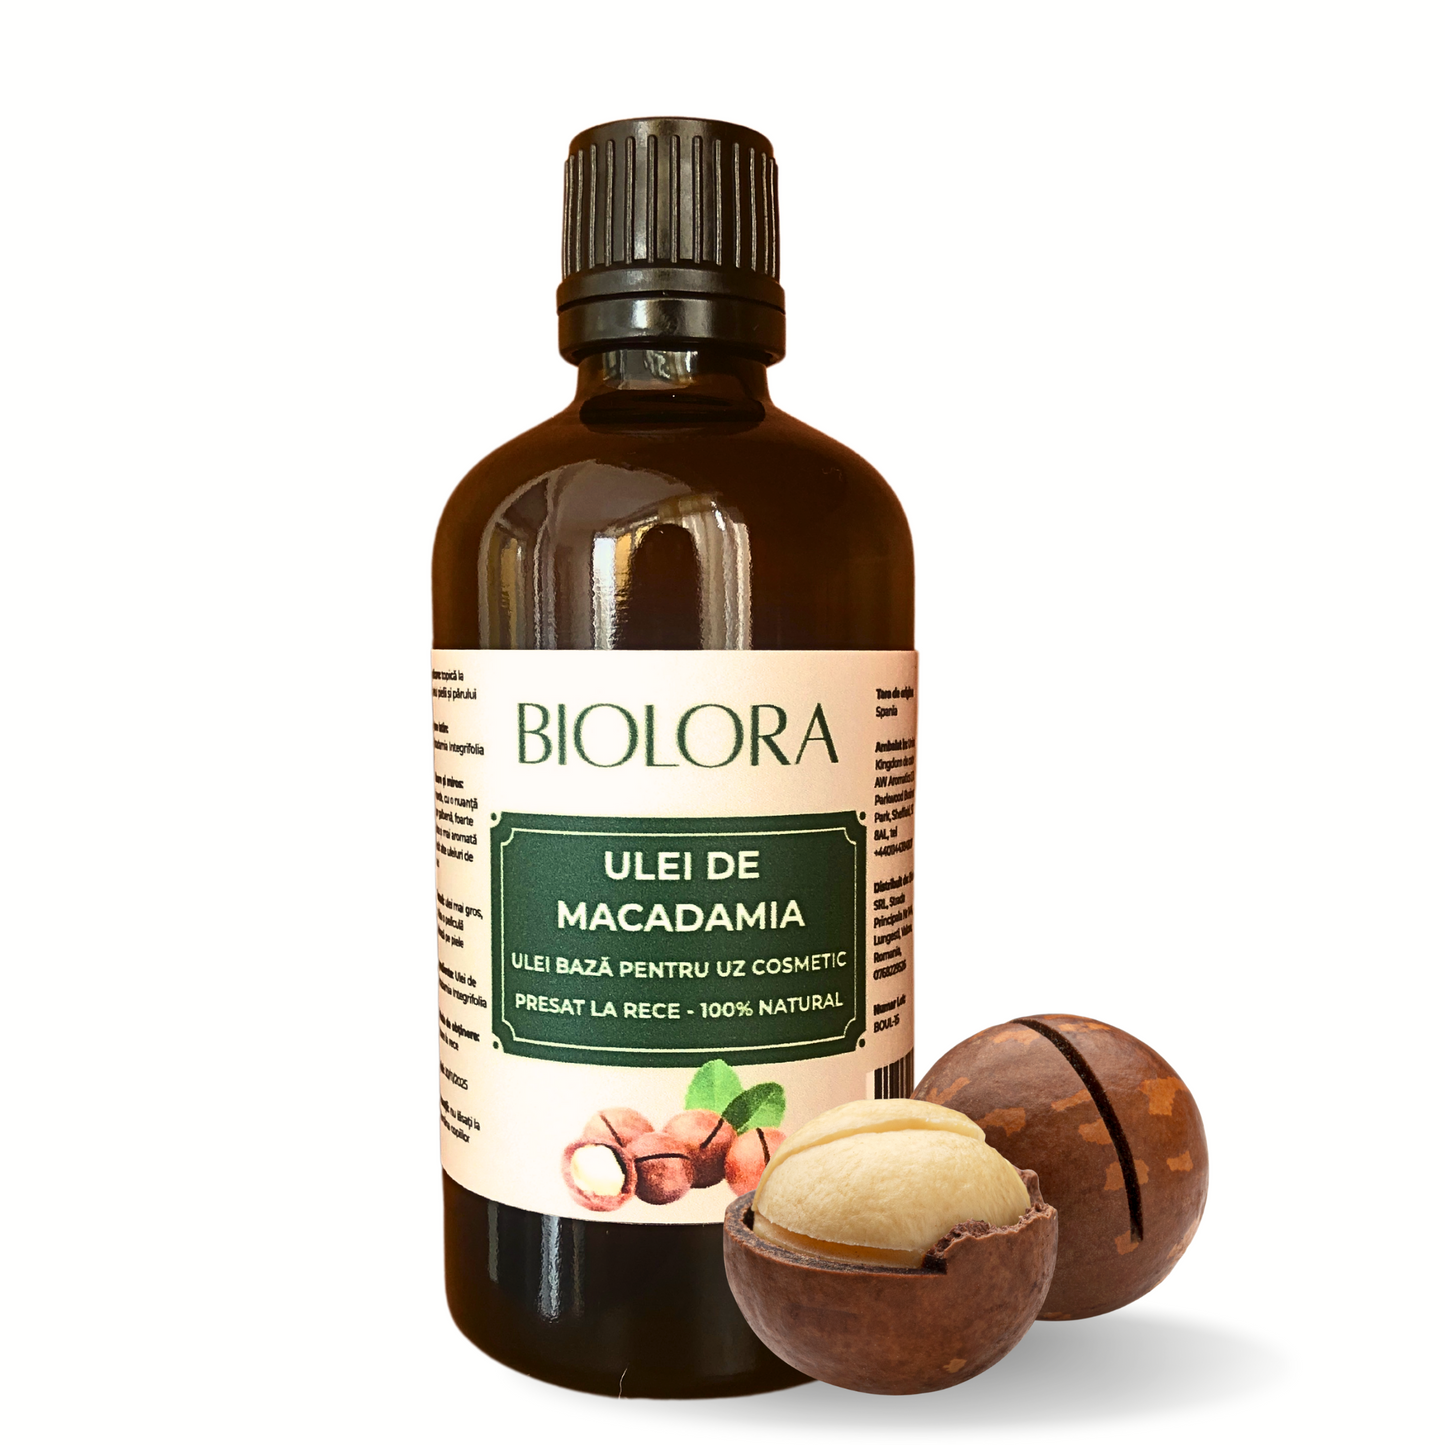 Ulei de Macadamia Biolora, presat la rece, 100% natural, uz cosmetic, pentru ingrijirea pielii si parului, 100 ml